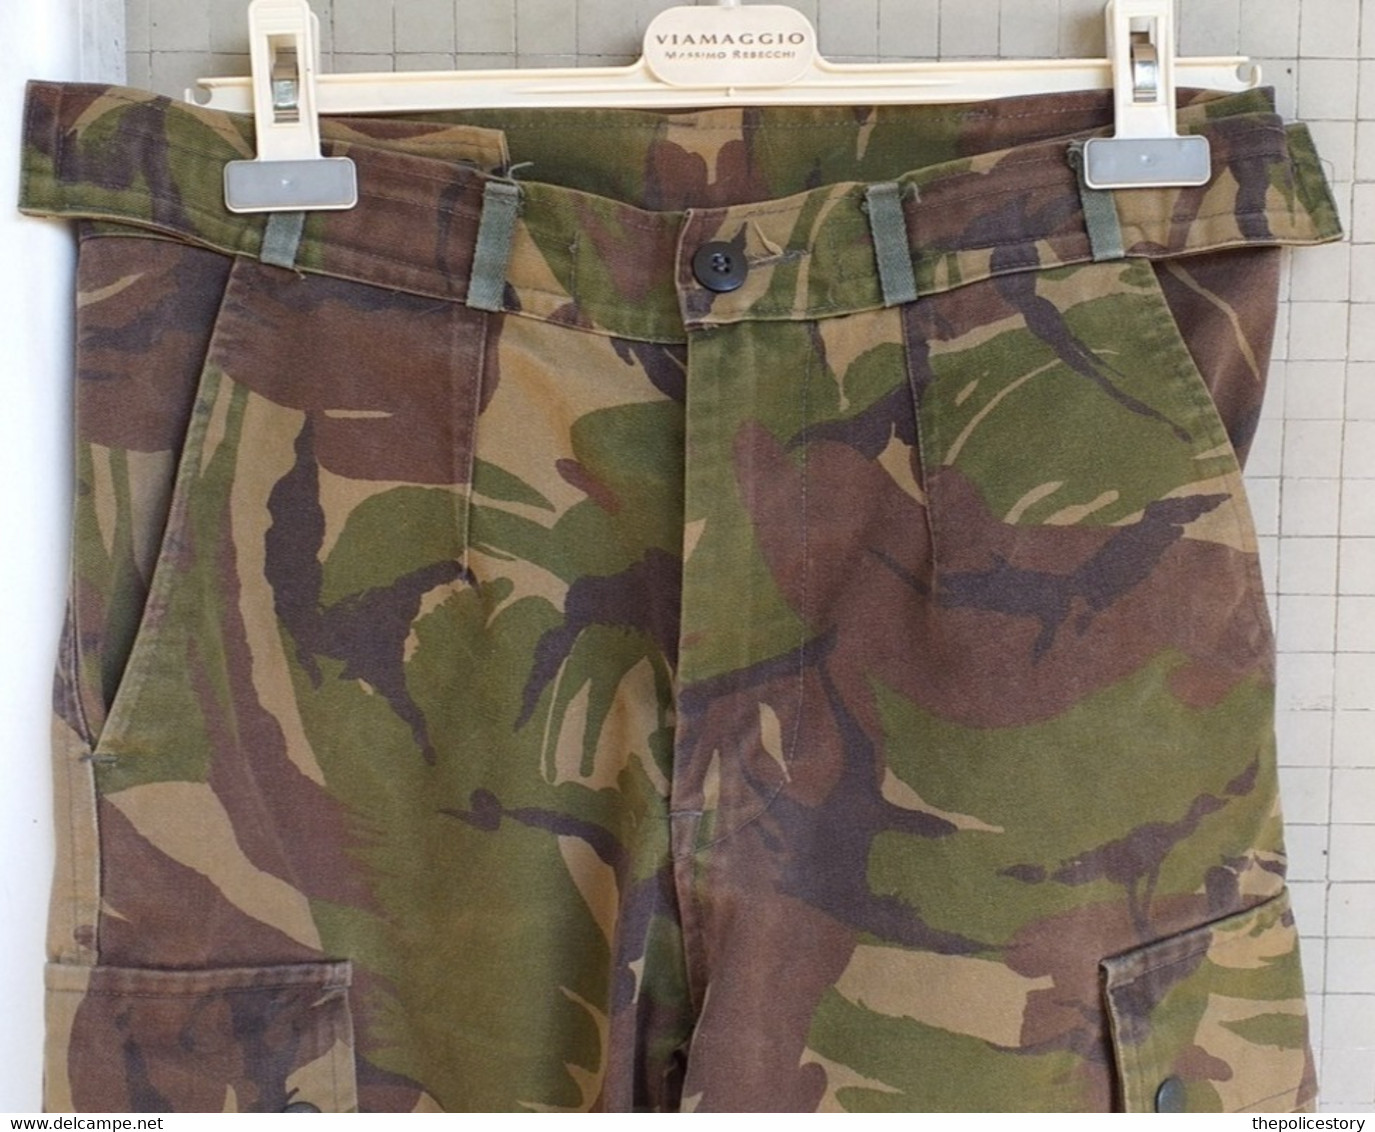 Giacca pantaloni mimetici olandesi DPM del 1990 etichettati usato buono stato